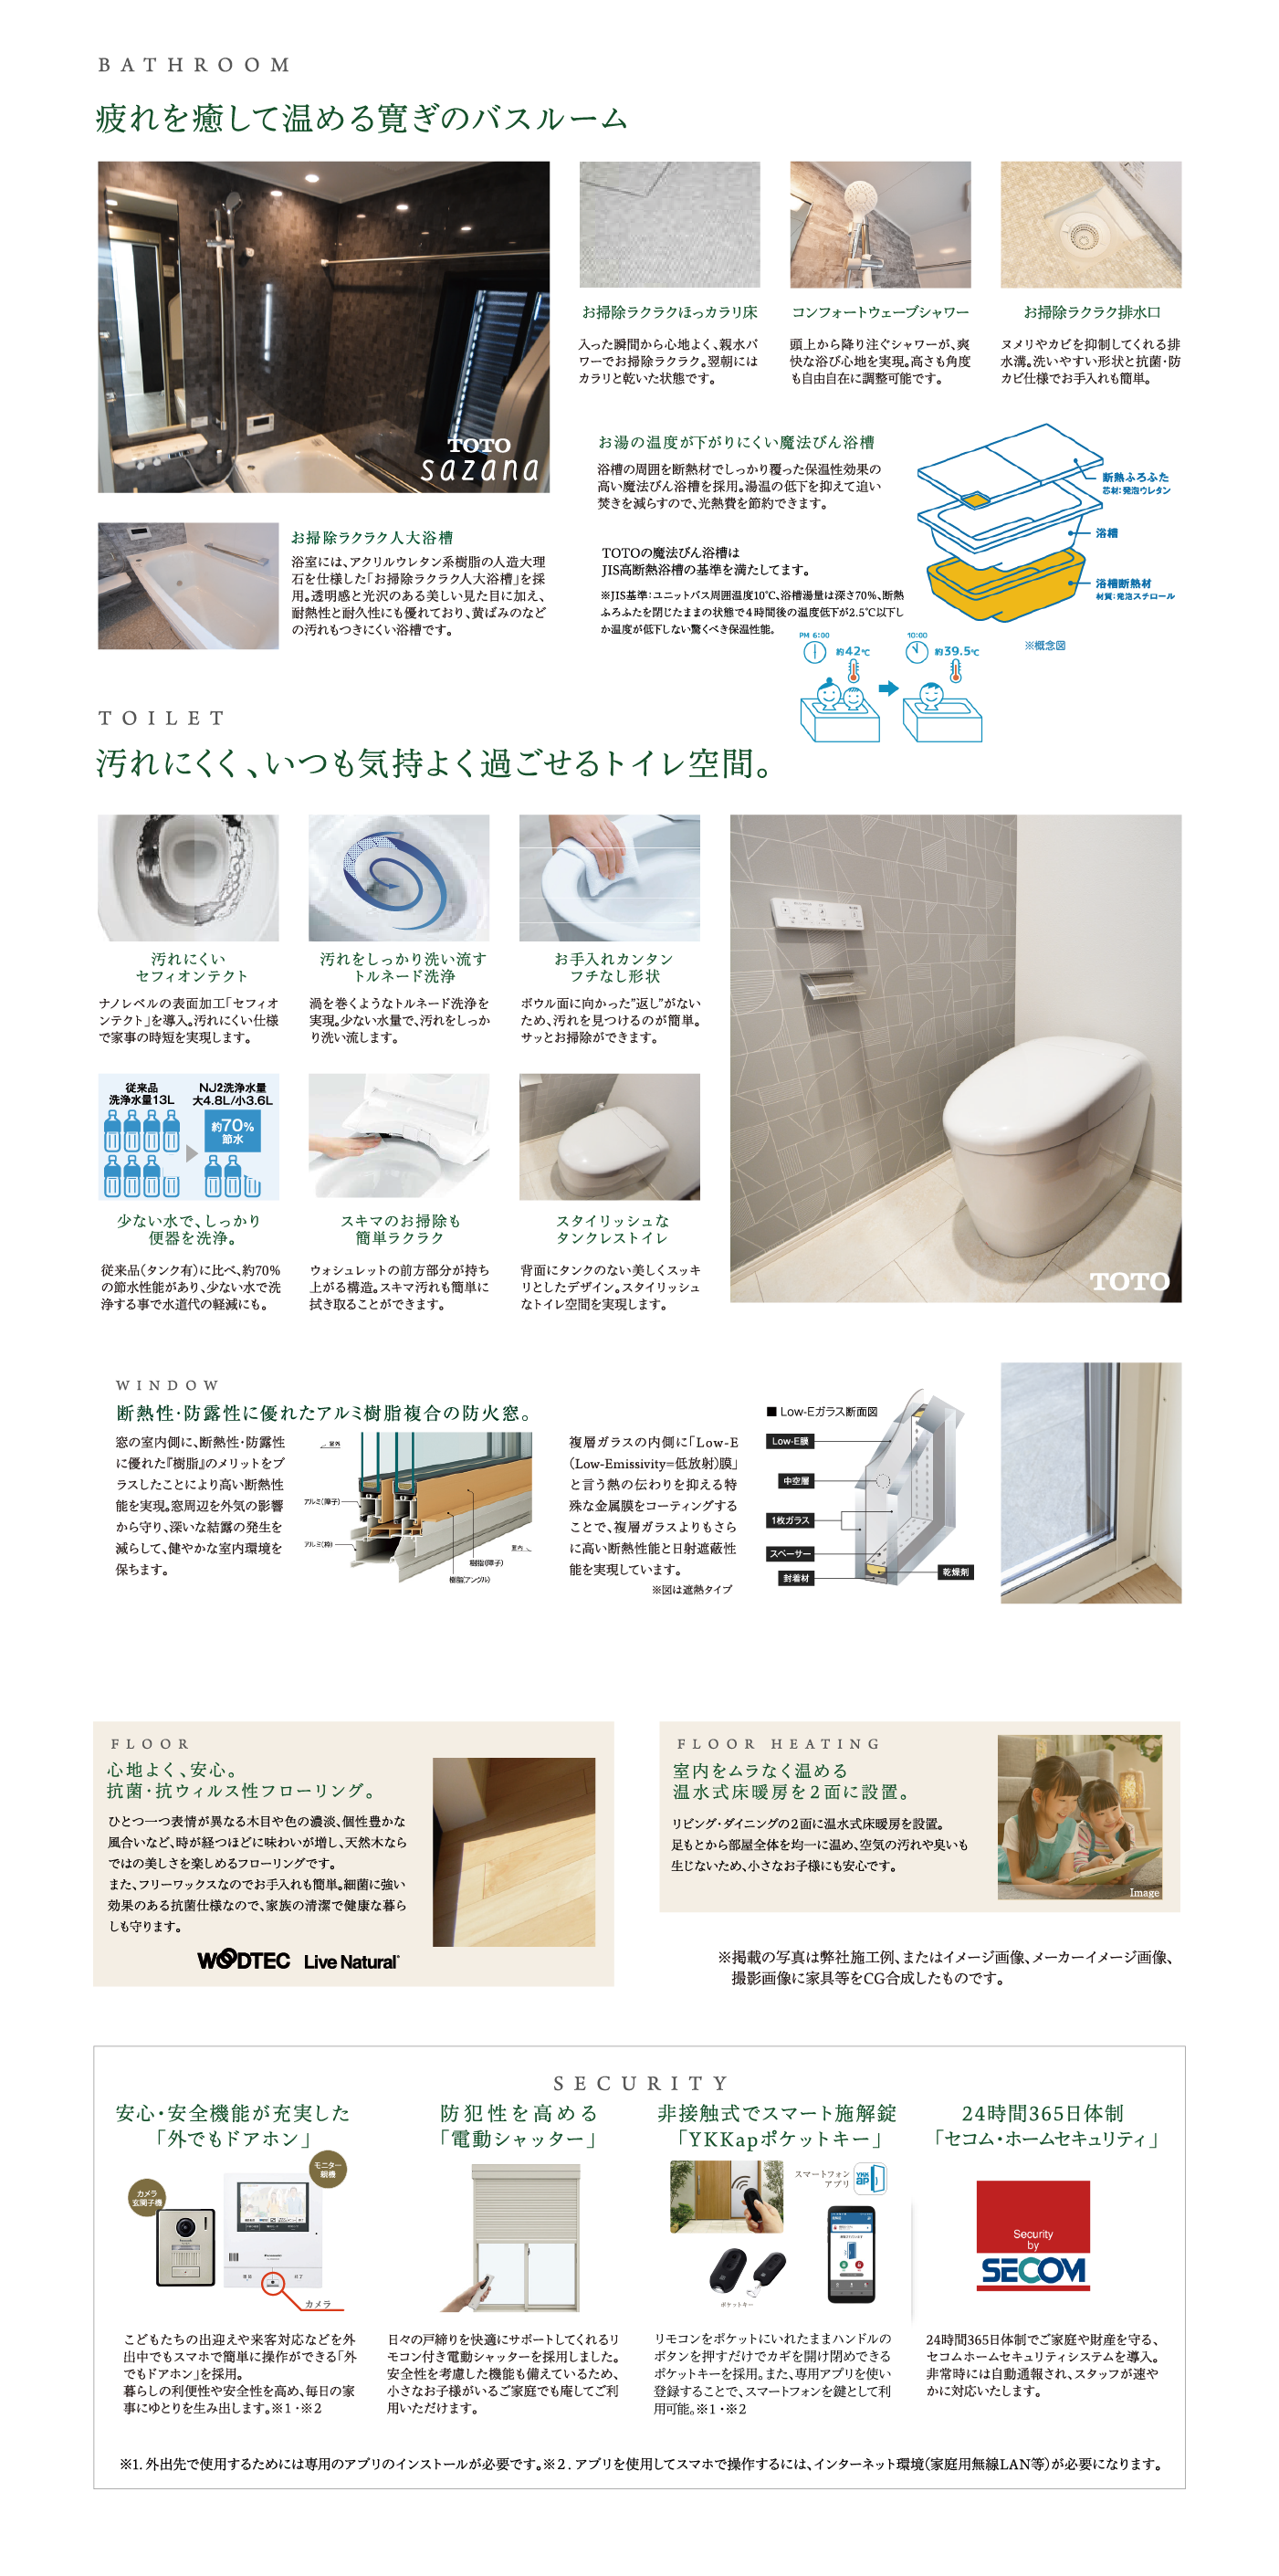 浴室・トイレ・冊子・床の設備・仕様と安全性